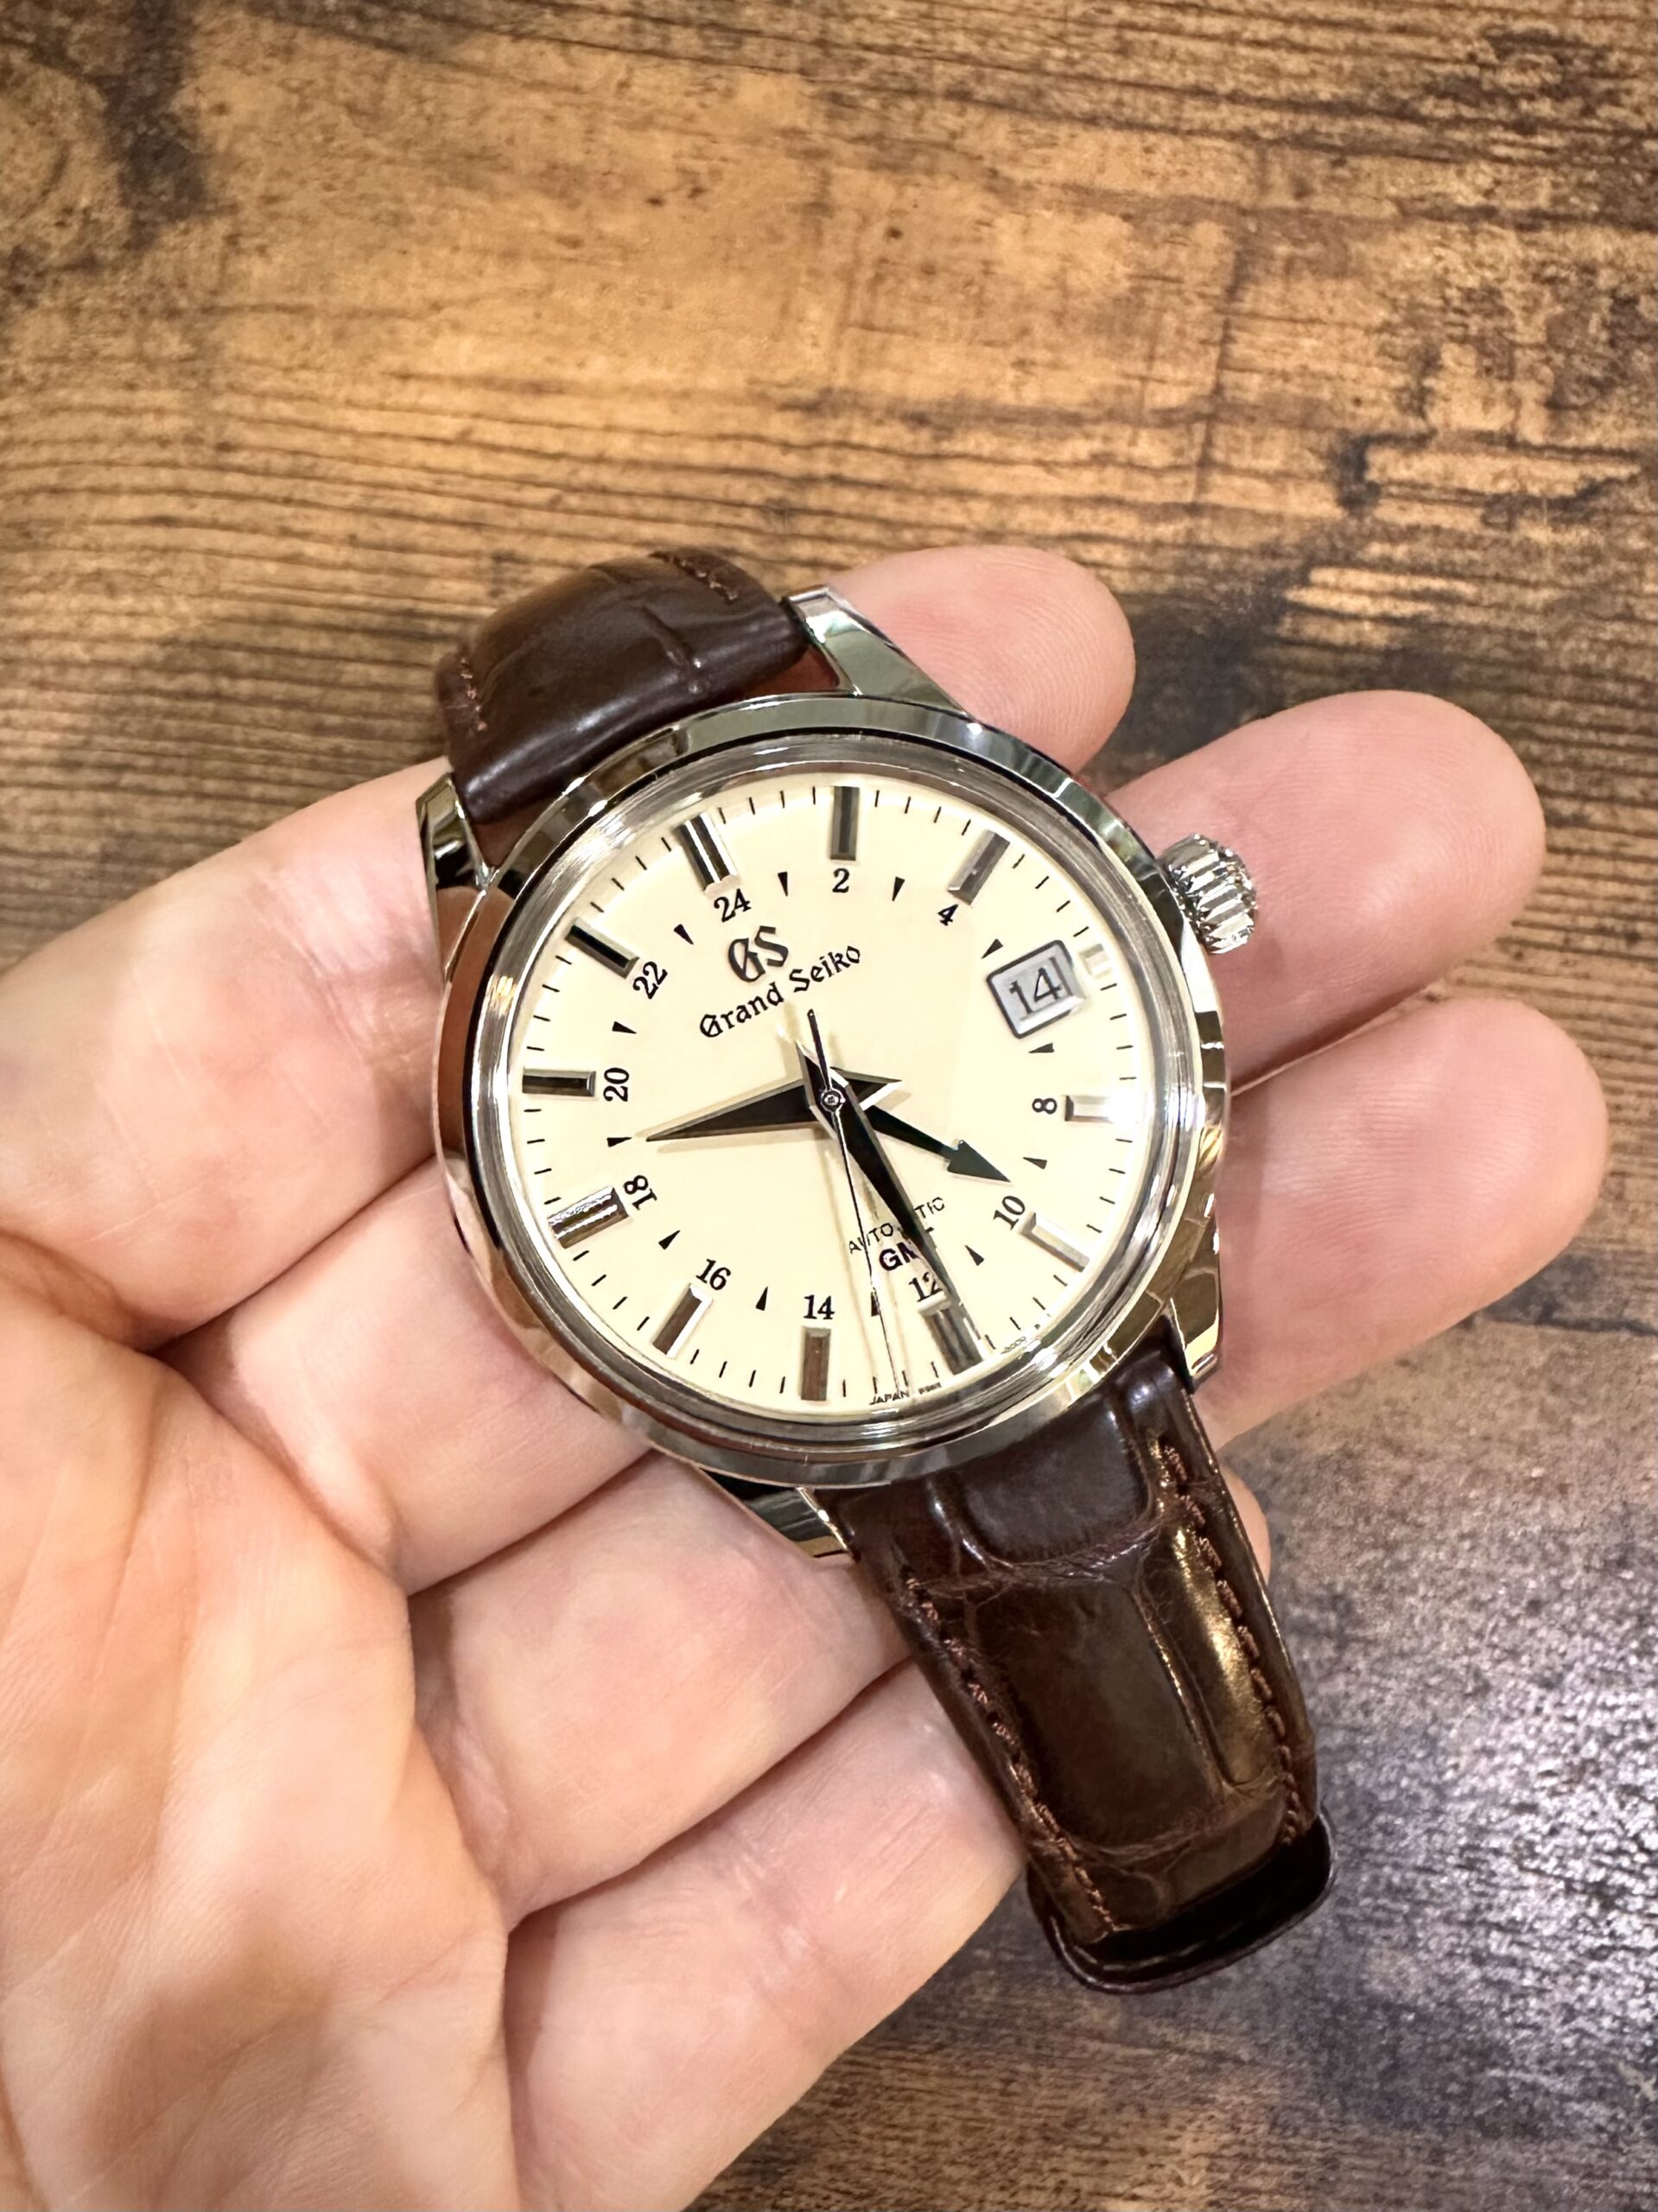 セイコー グランドセイコー エレガンス コレクション メカニカル GMT SBGM221 / 9S66-00A0  の購入レビュー（評価・評判・口コミ）【たまご様】 - ロレックスなど高級ブランド腕時計販売・買取店れんず